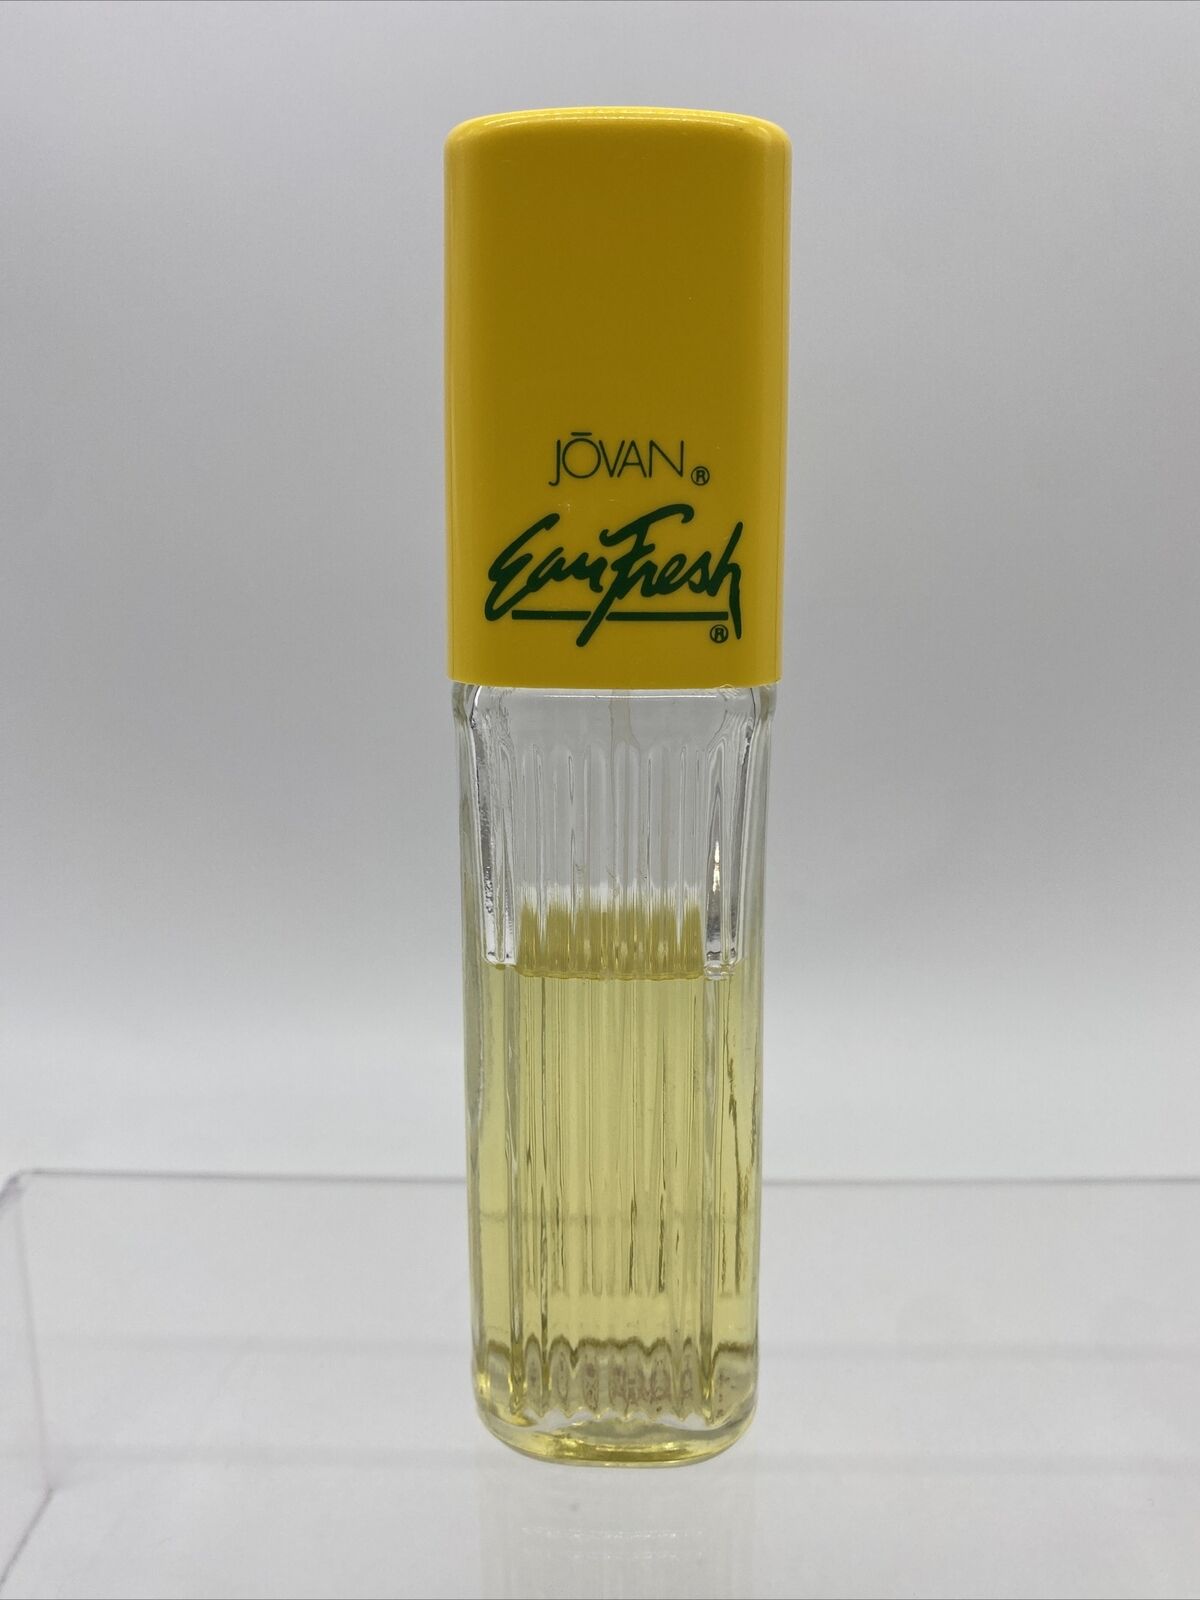 Jovan Eau Fresh Vintage Cologne Spray 2.0 Fl. Oz and 65% Full No Box